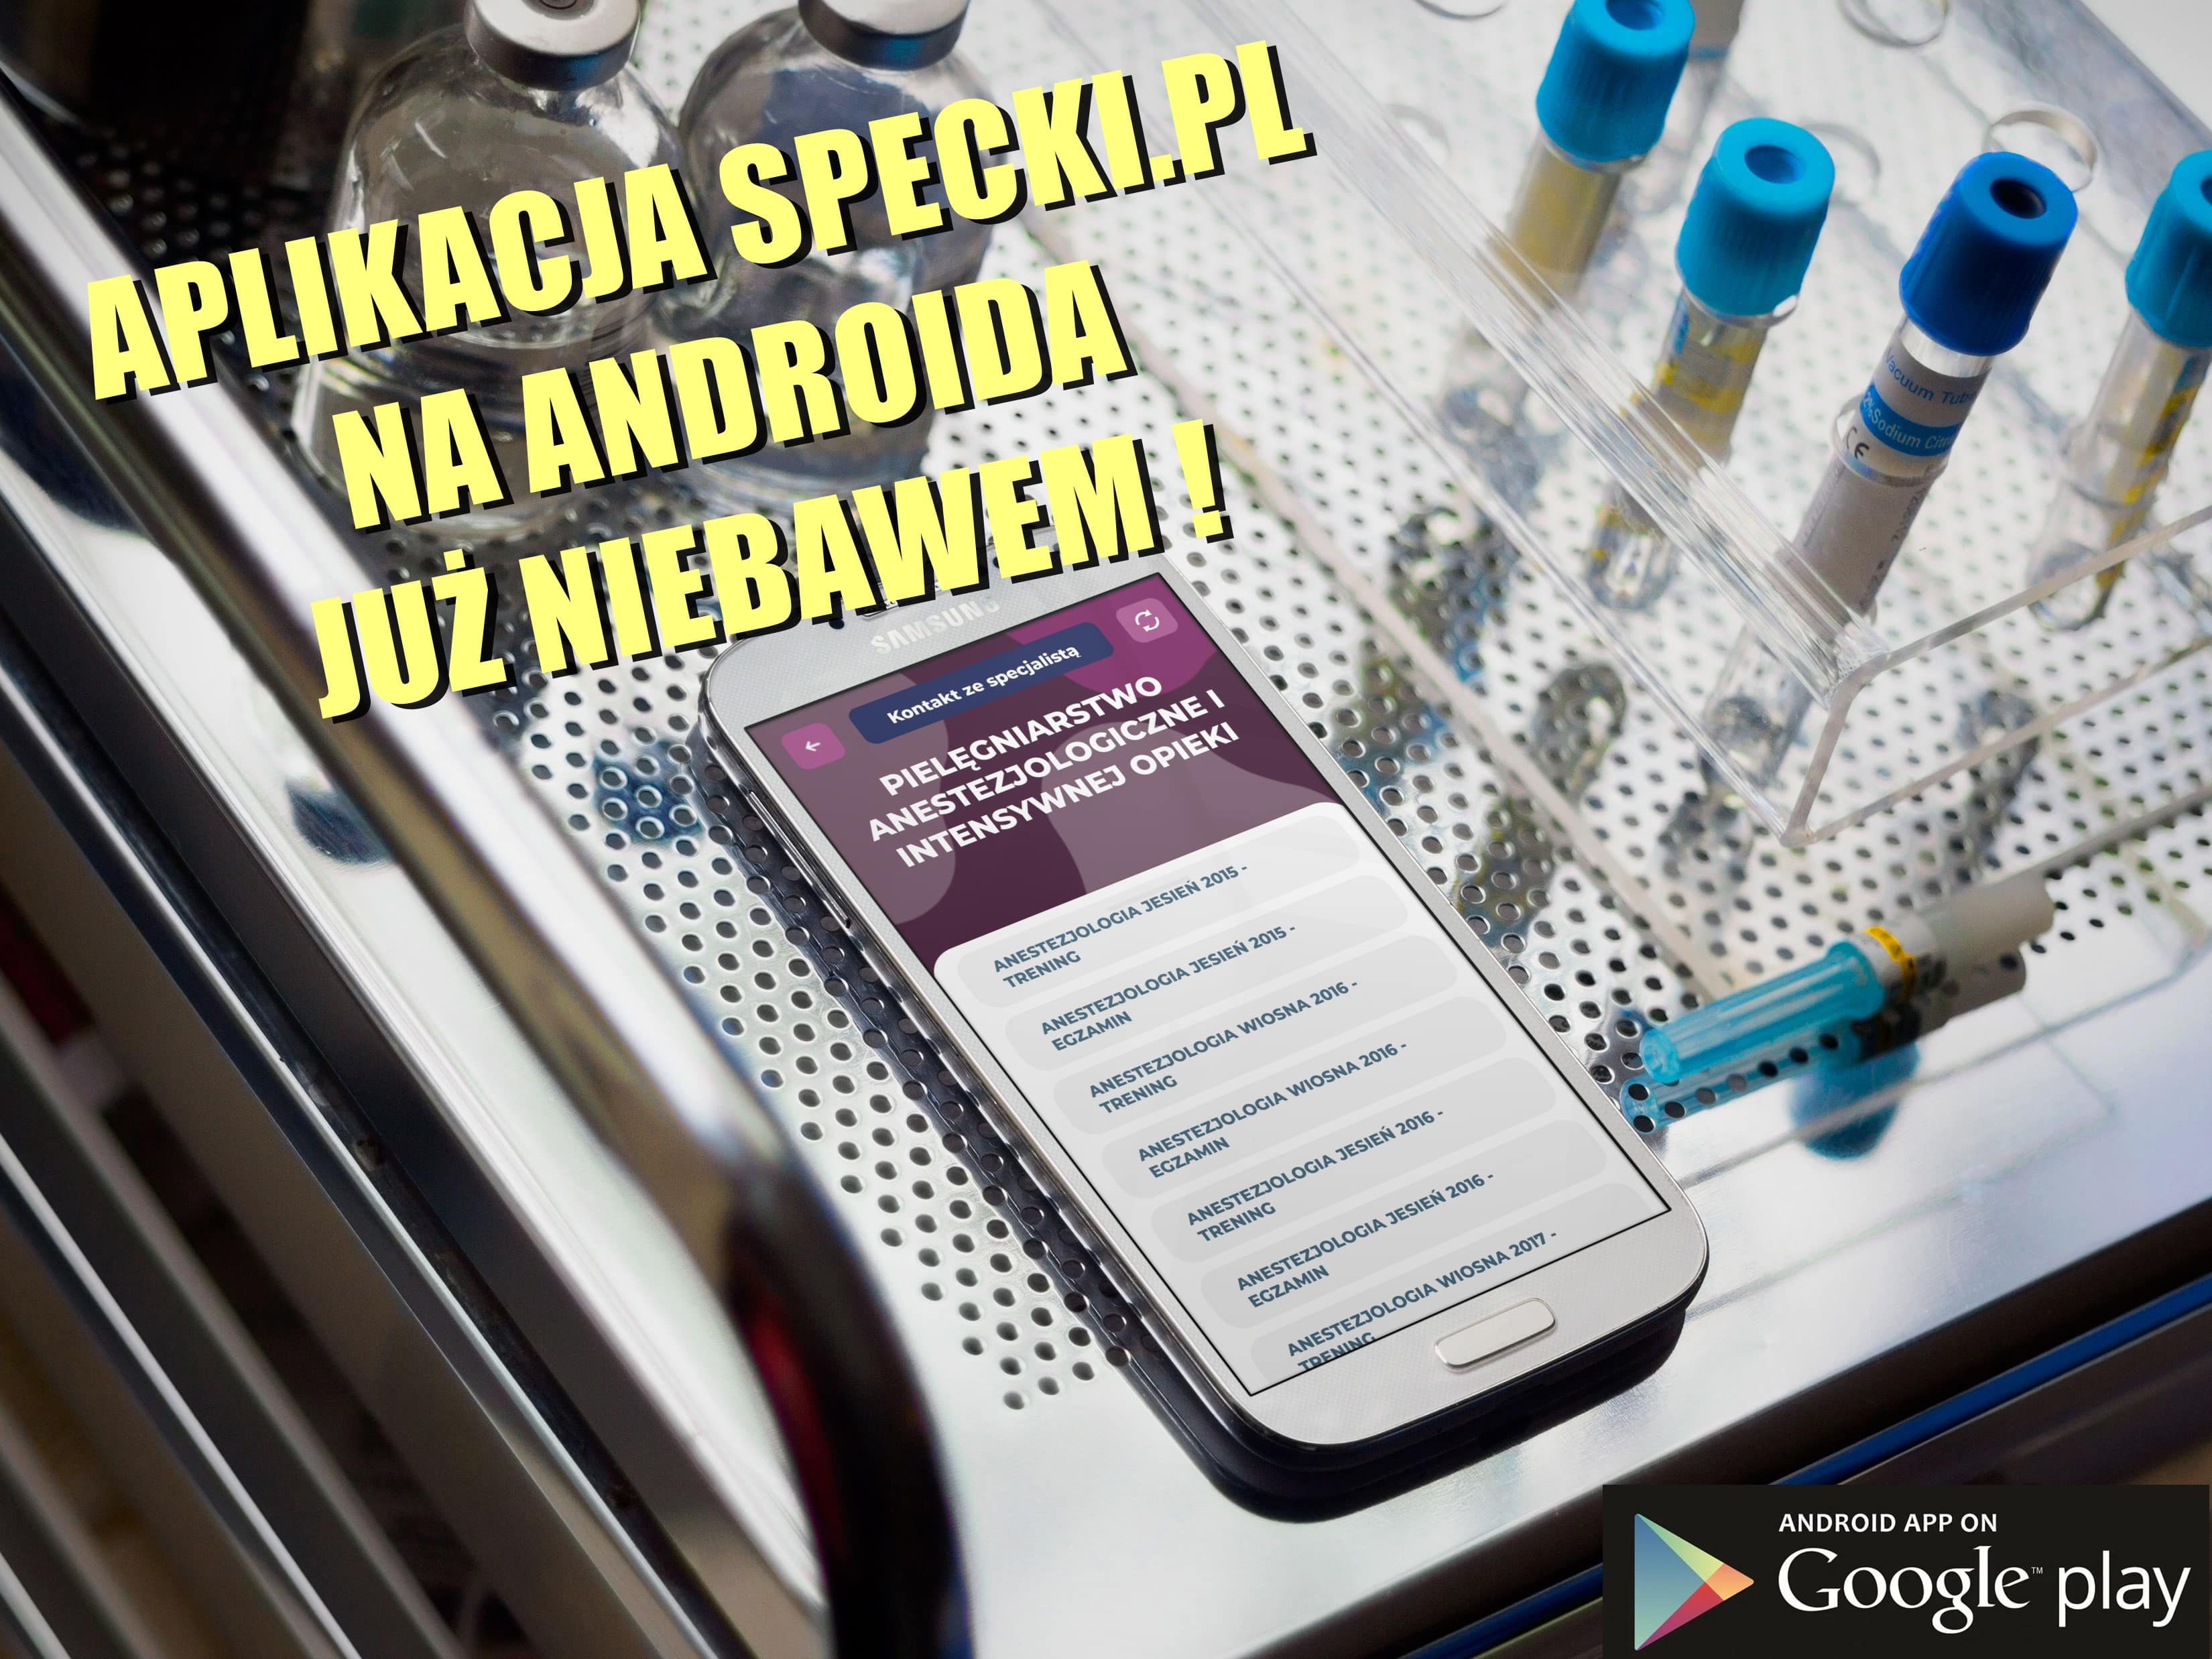 Specki.pl aplikacja mobilna na androida